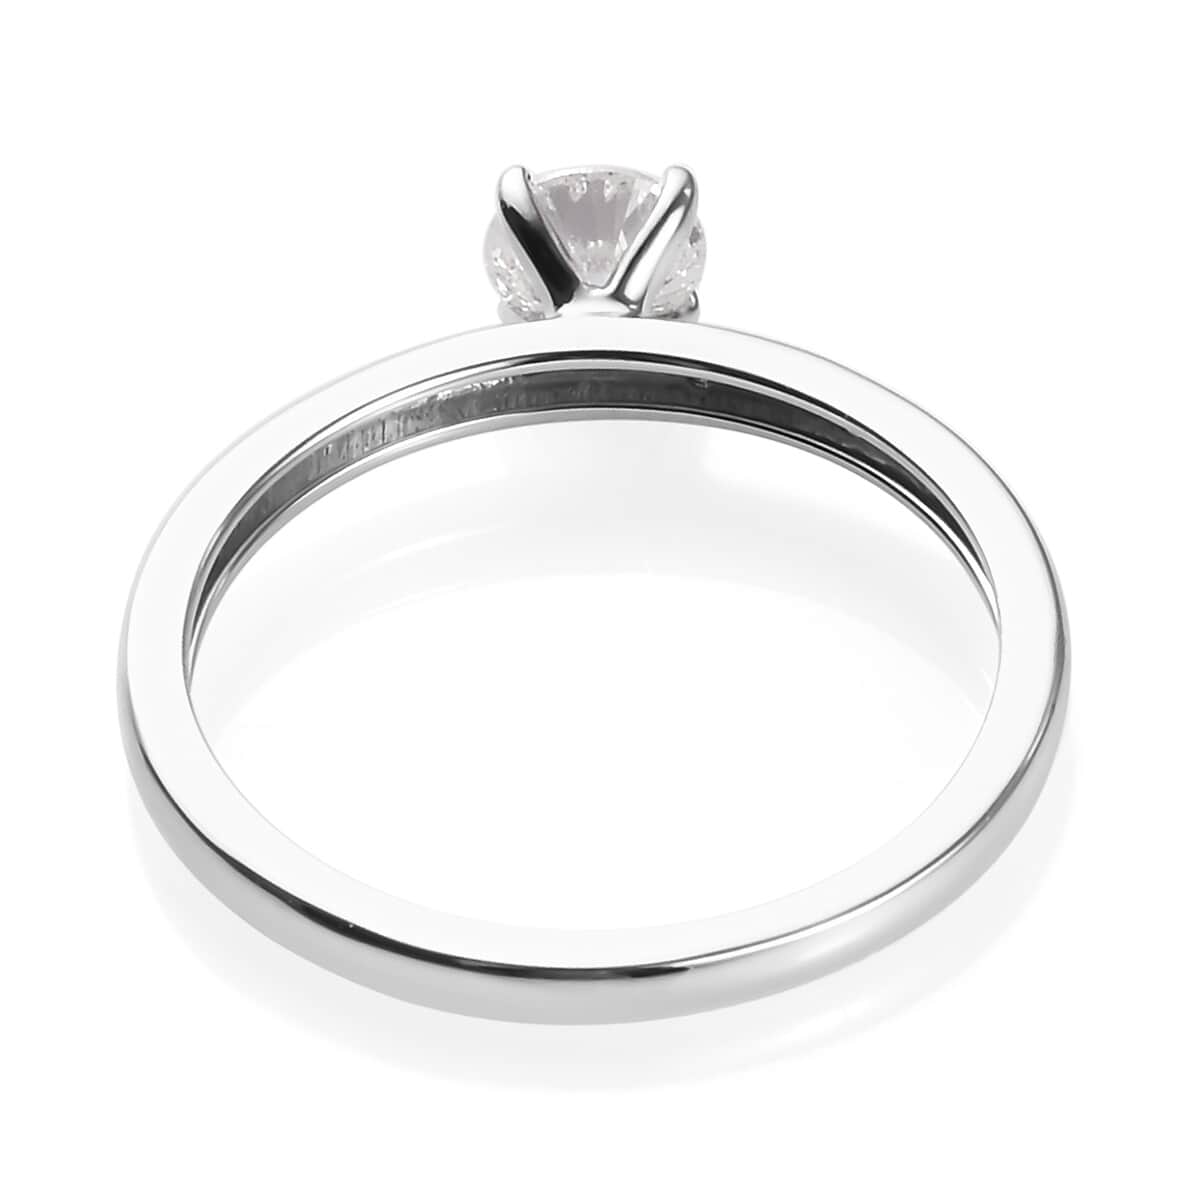 10K White Gold G-H I3 Diamond Ring (Size 8.0) 2 Grams 0.50 ctw image number 4